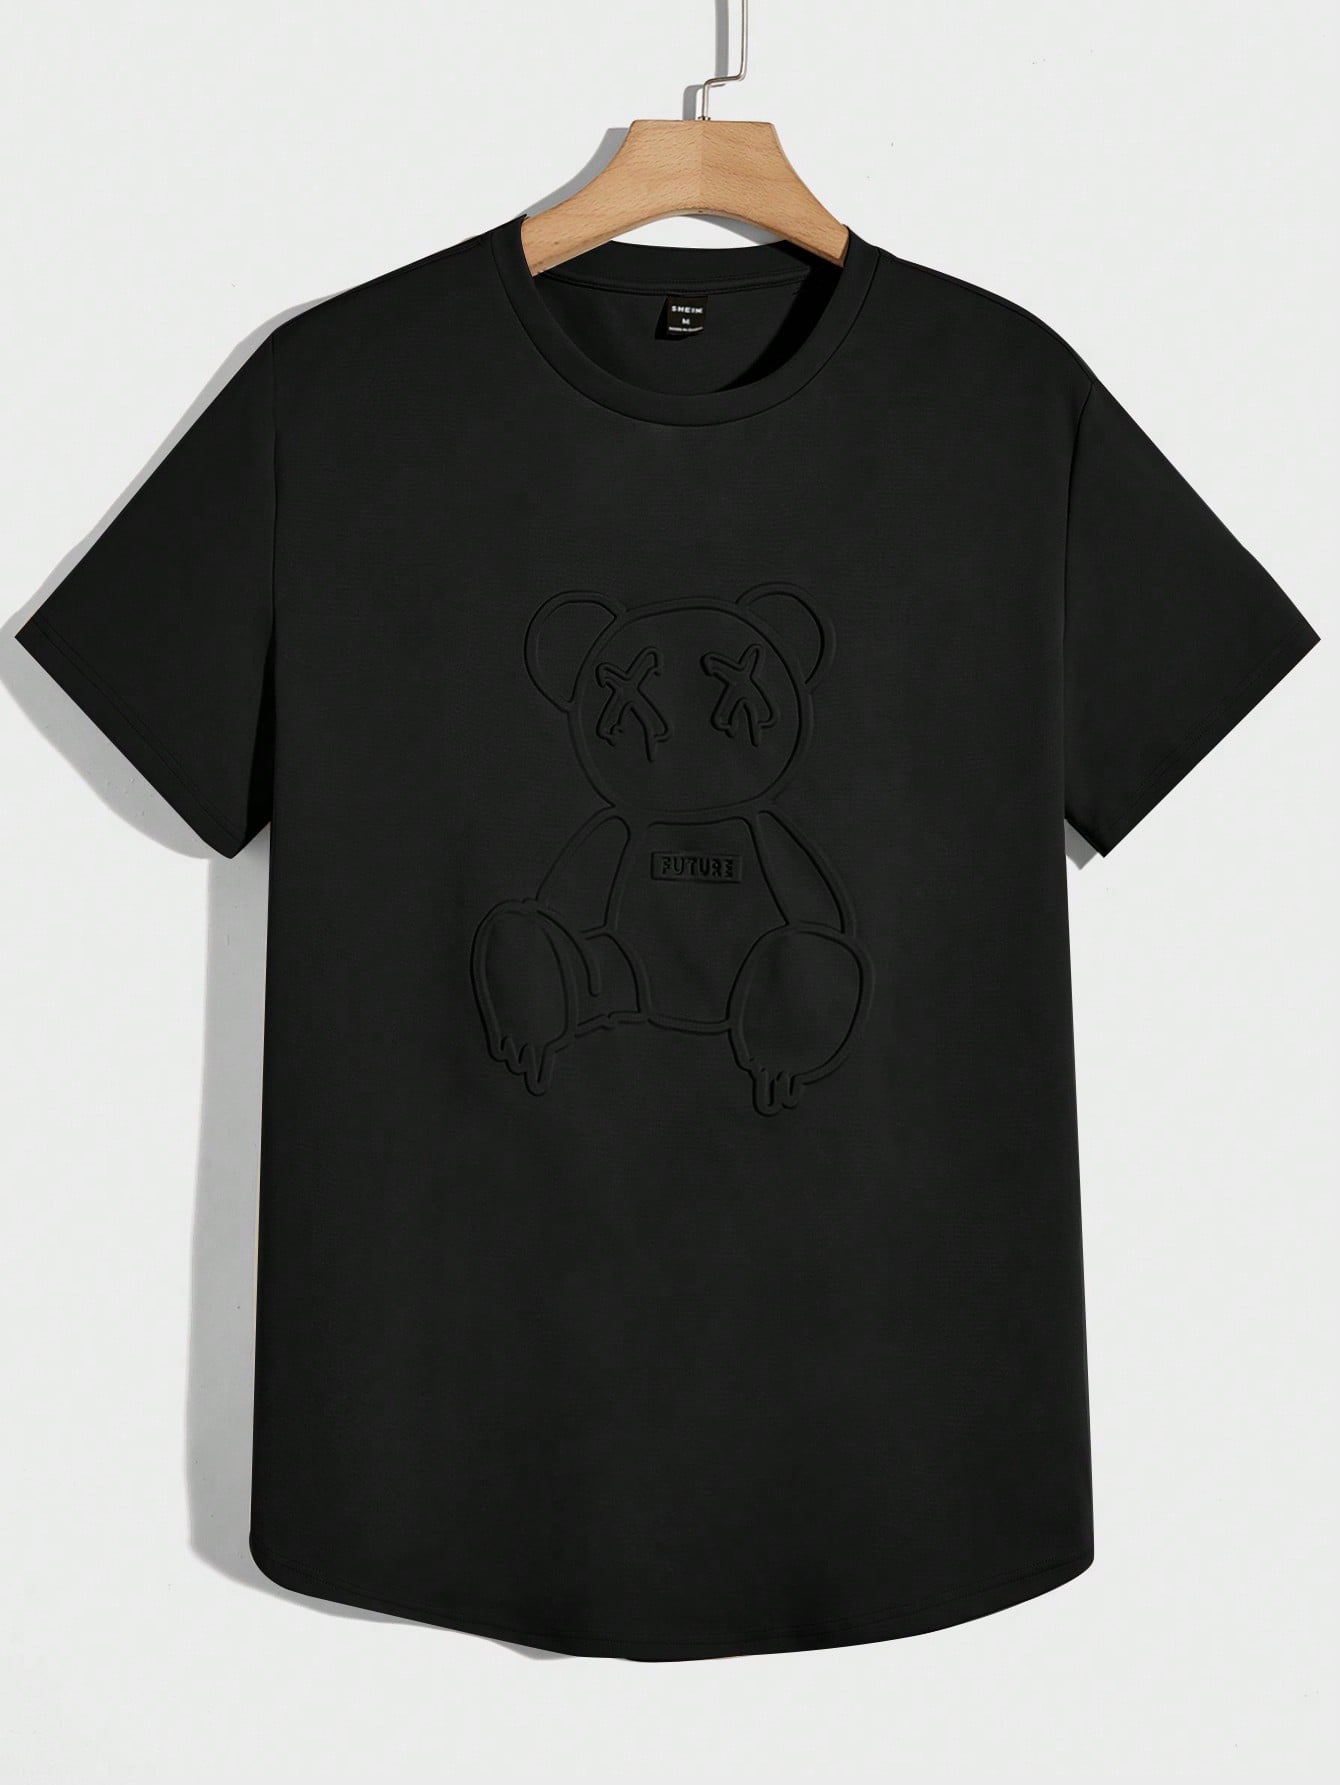 Мужская вязаная футболка Manfinity Hypemode с короткими рукавами и прессованным мишкой, черный